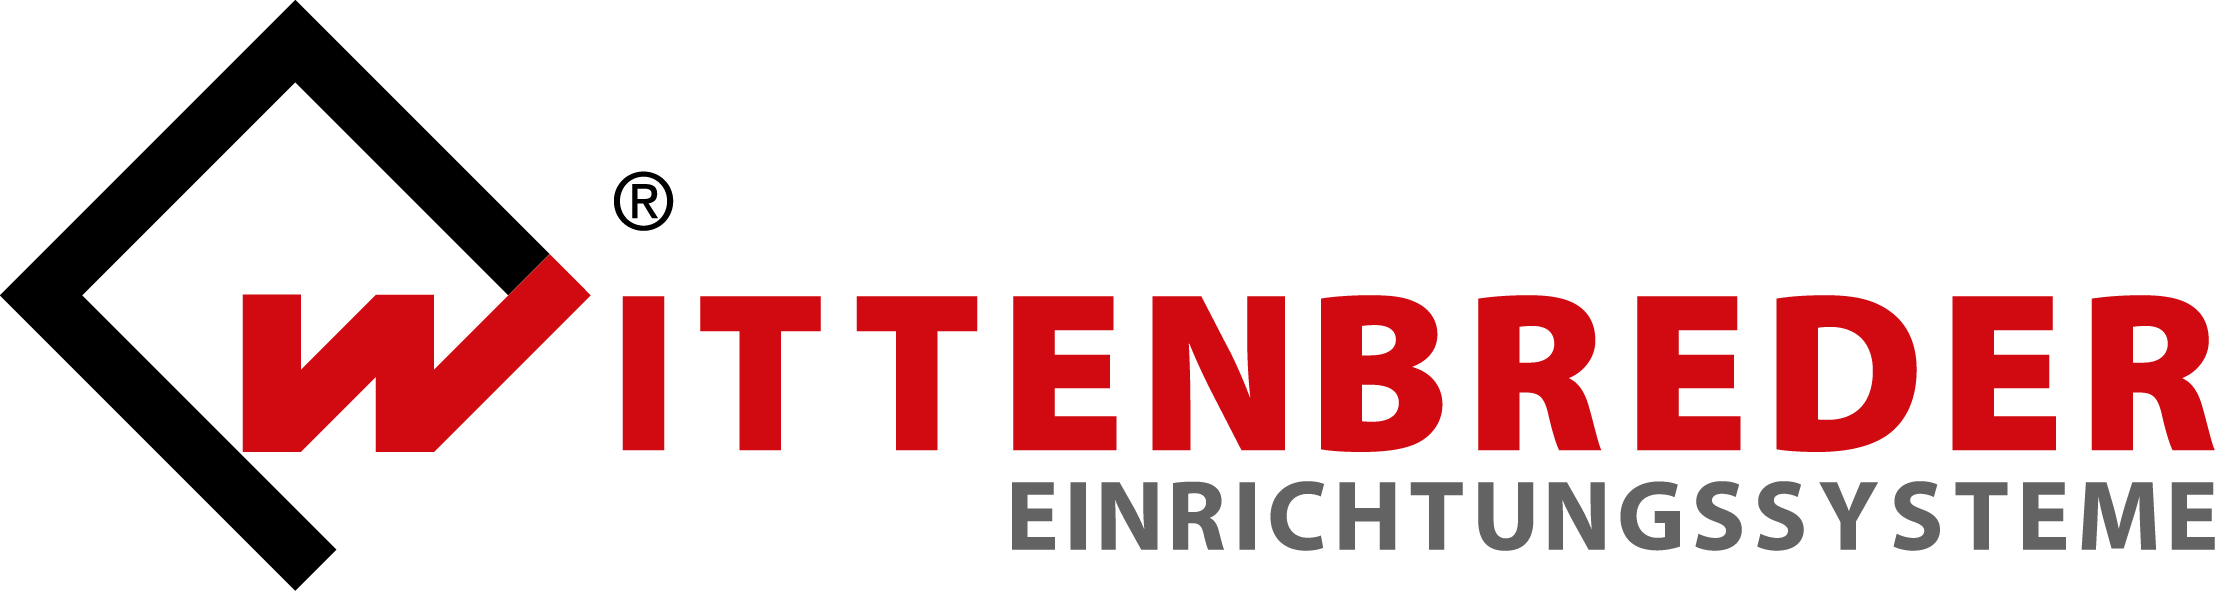 logo_wittenbreder